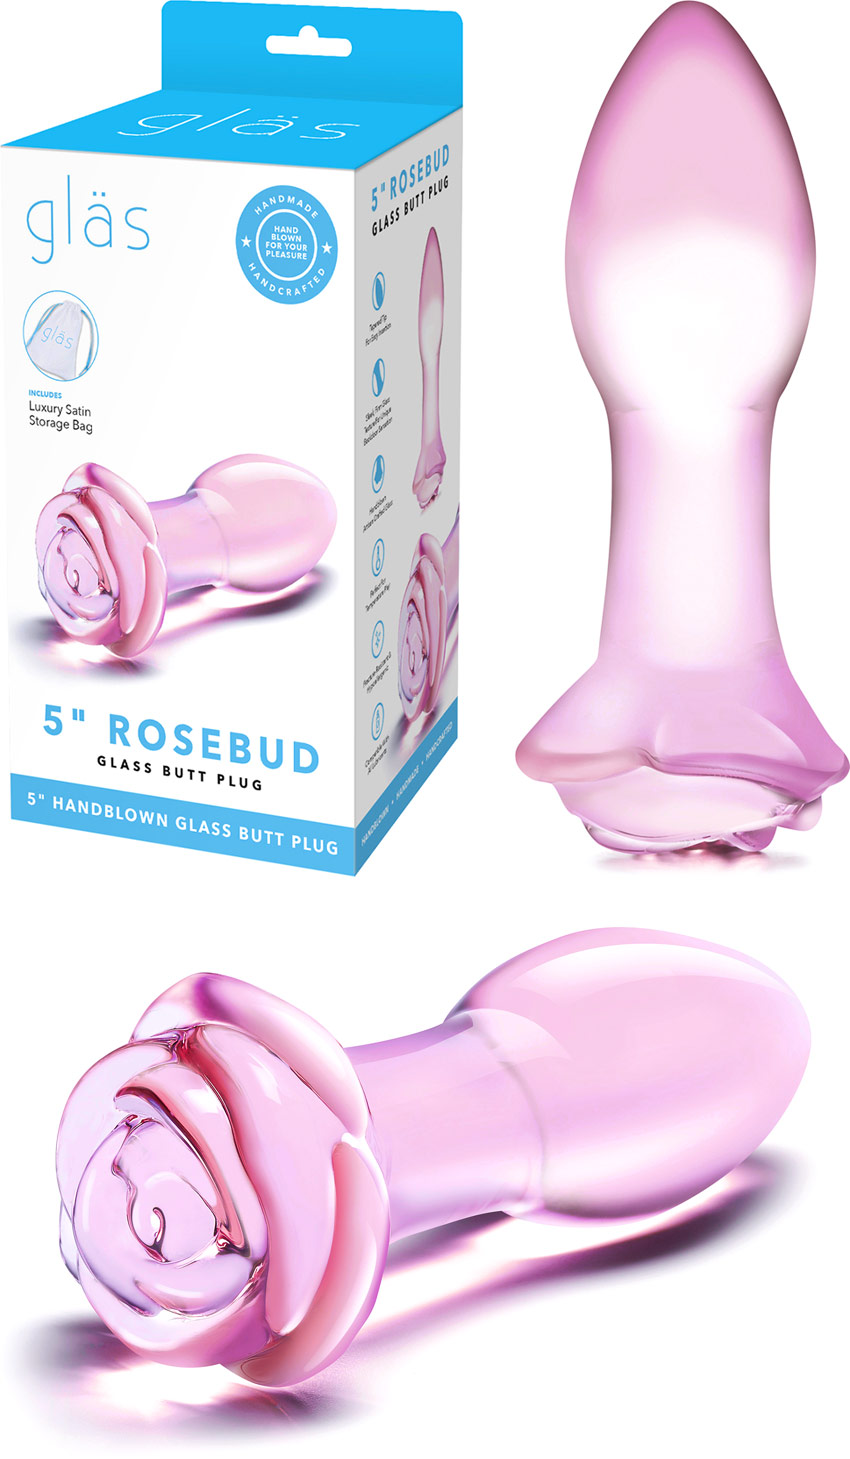 Gläs Rosebud Analplug aus Glas